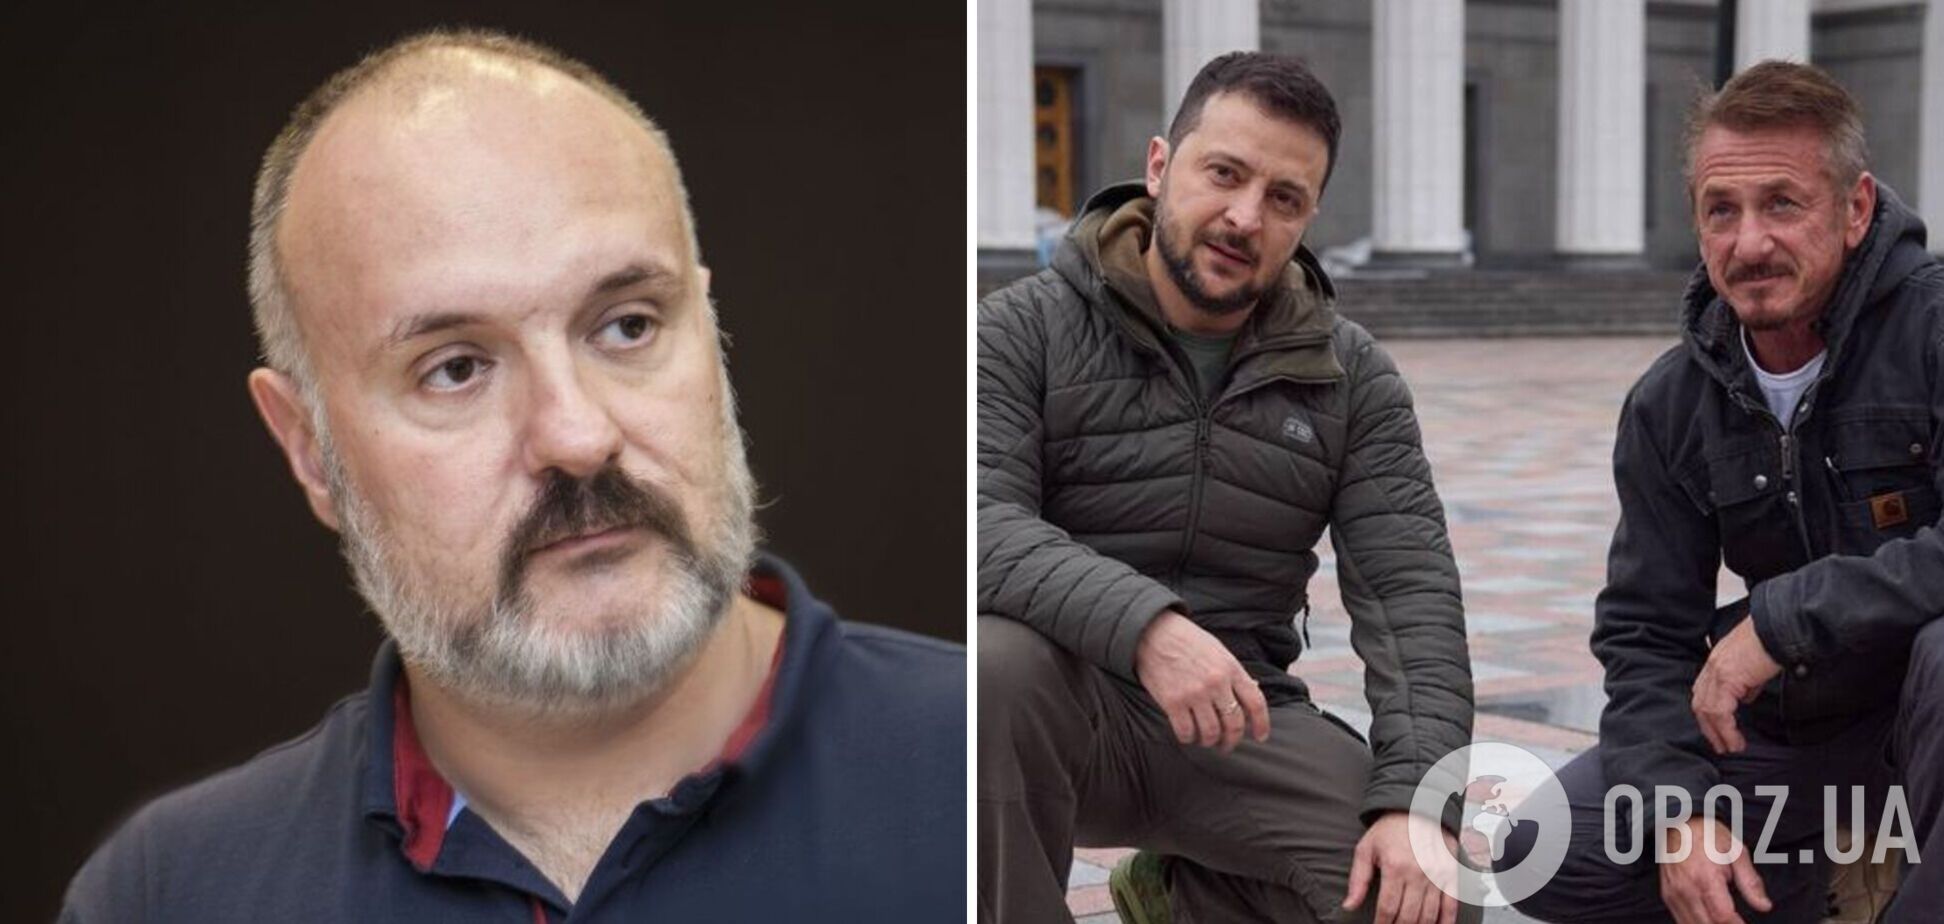 Сербський пропагандист звинуватив Шона Пенна в 'геноциді жителів Донбасу'